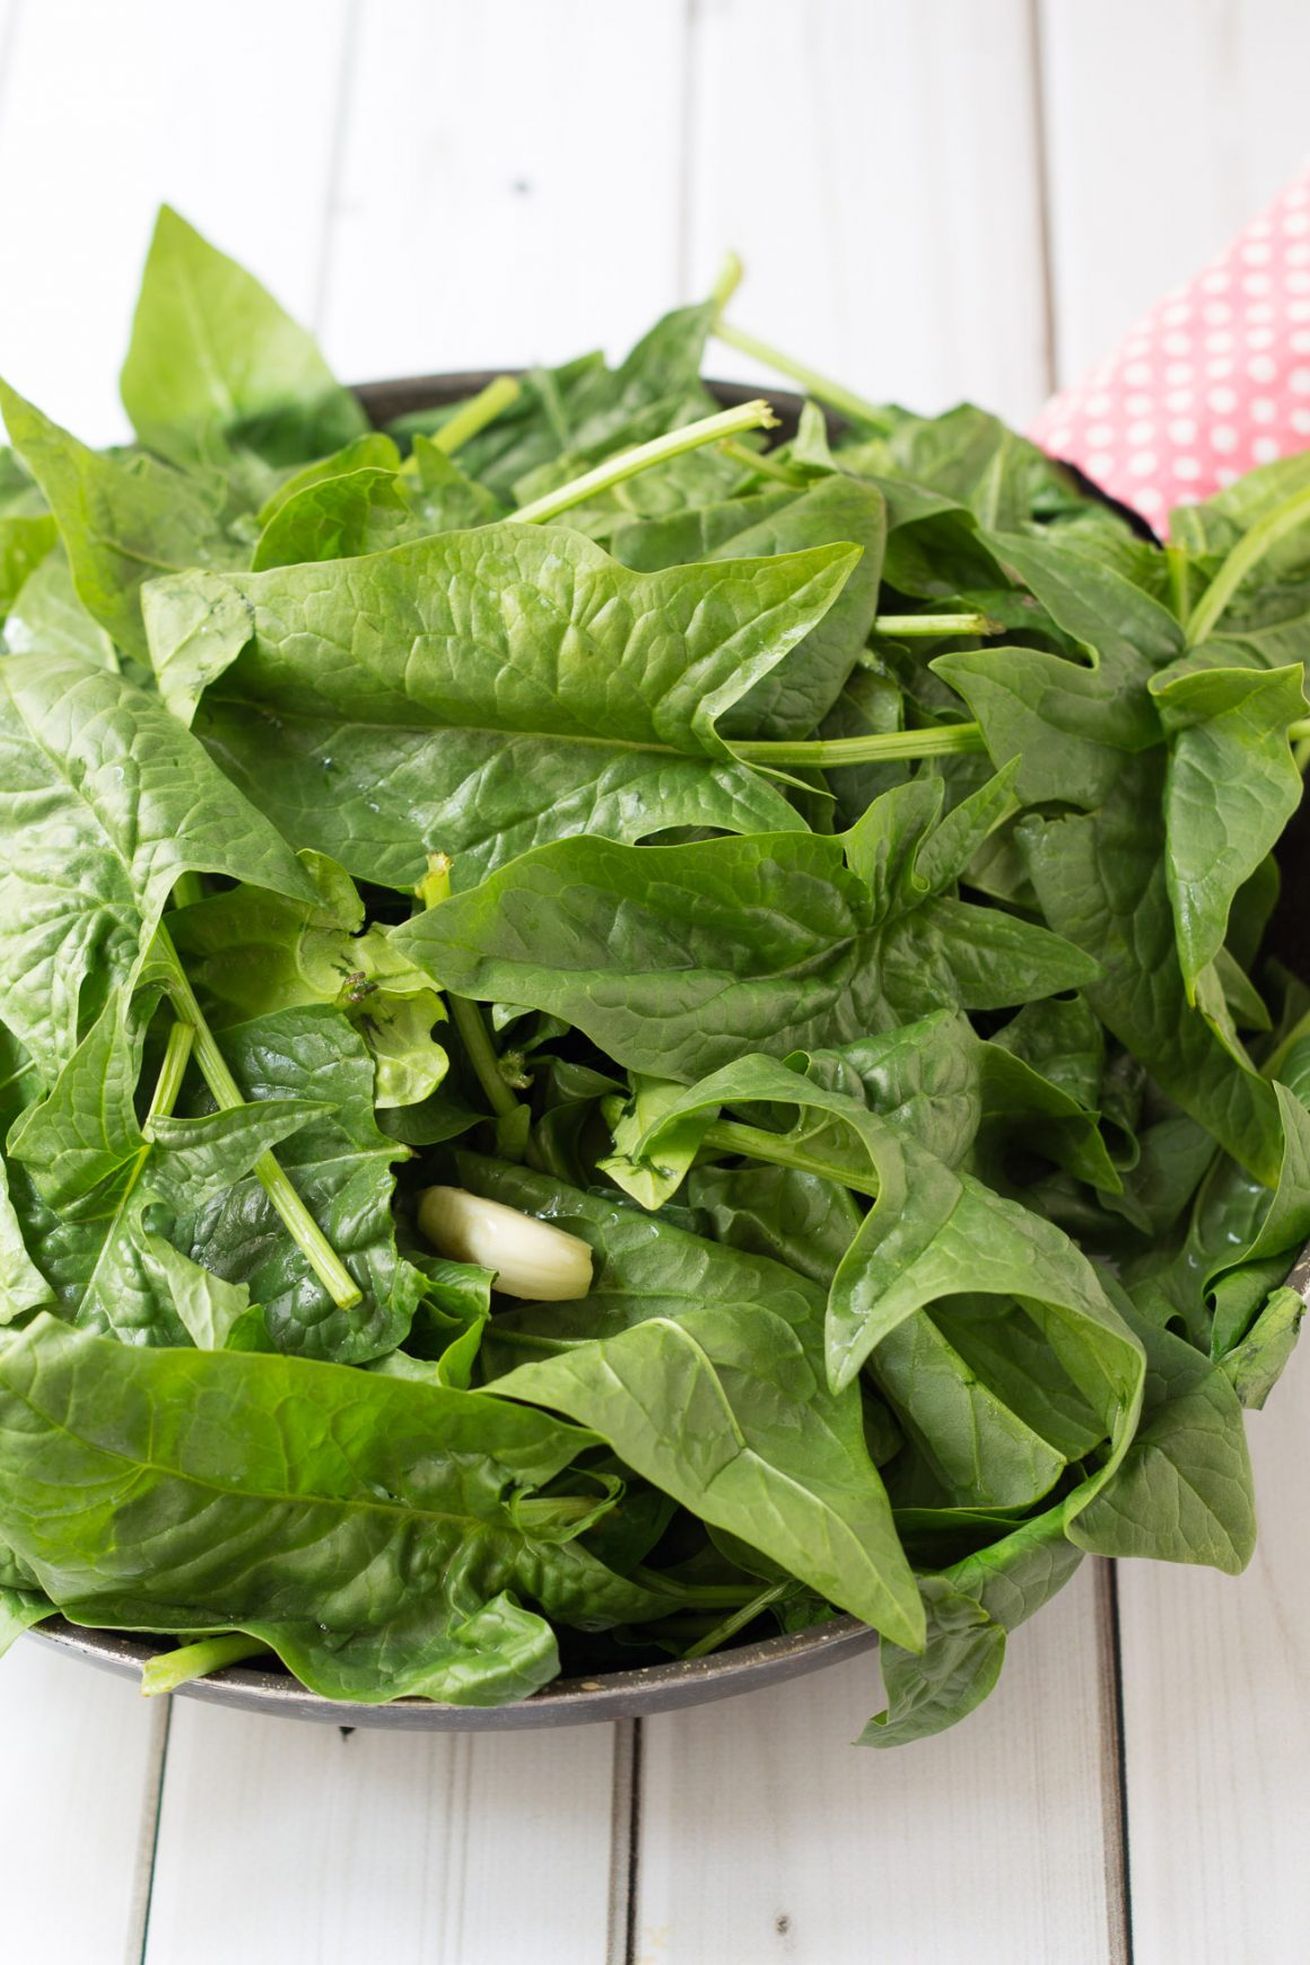 polpette ricotta e spinaci in padella ingredienti